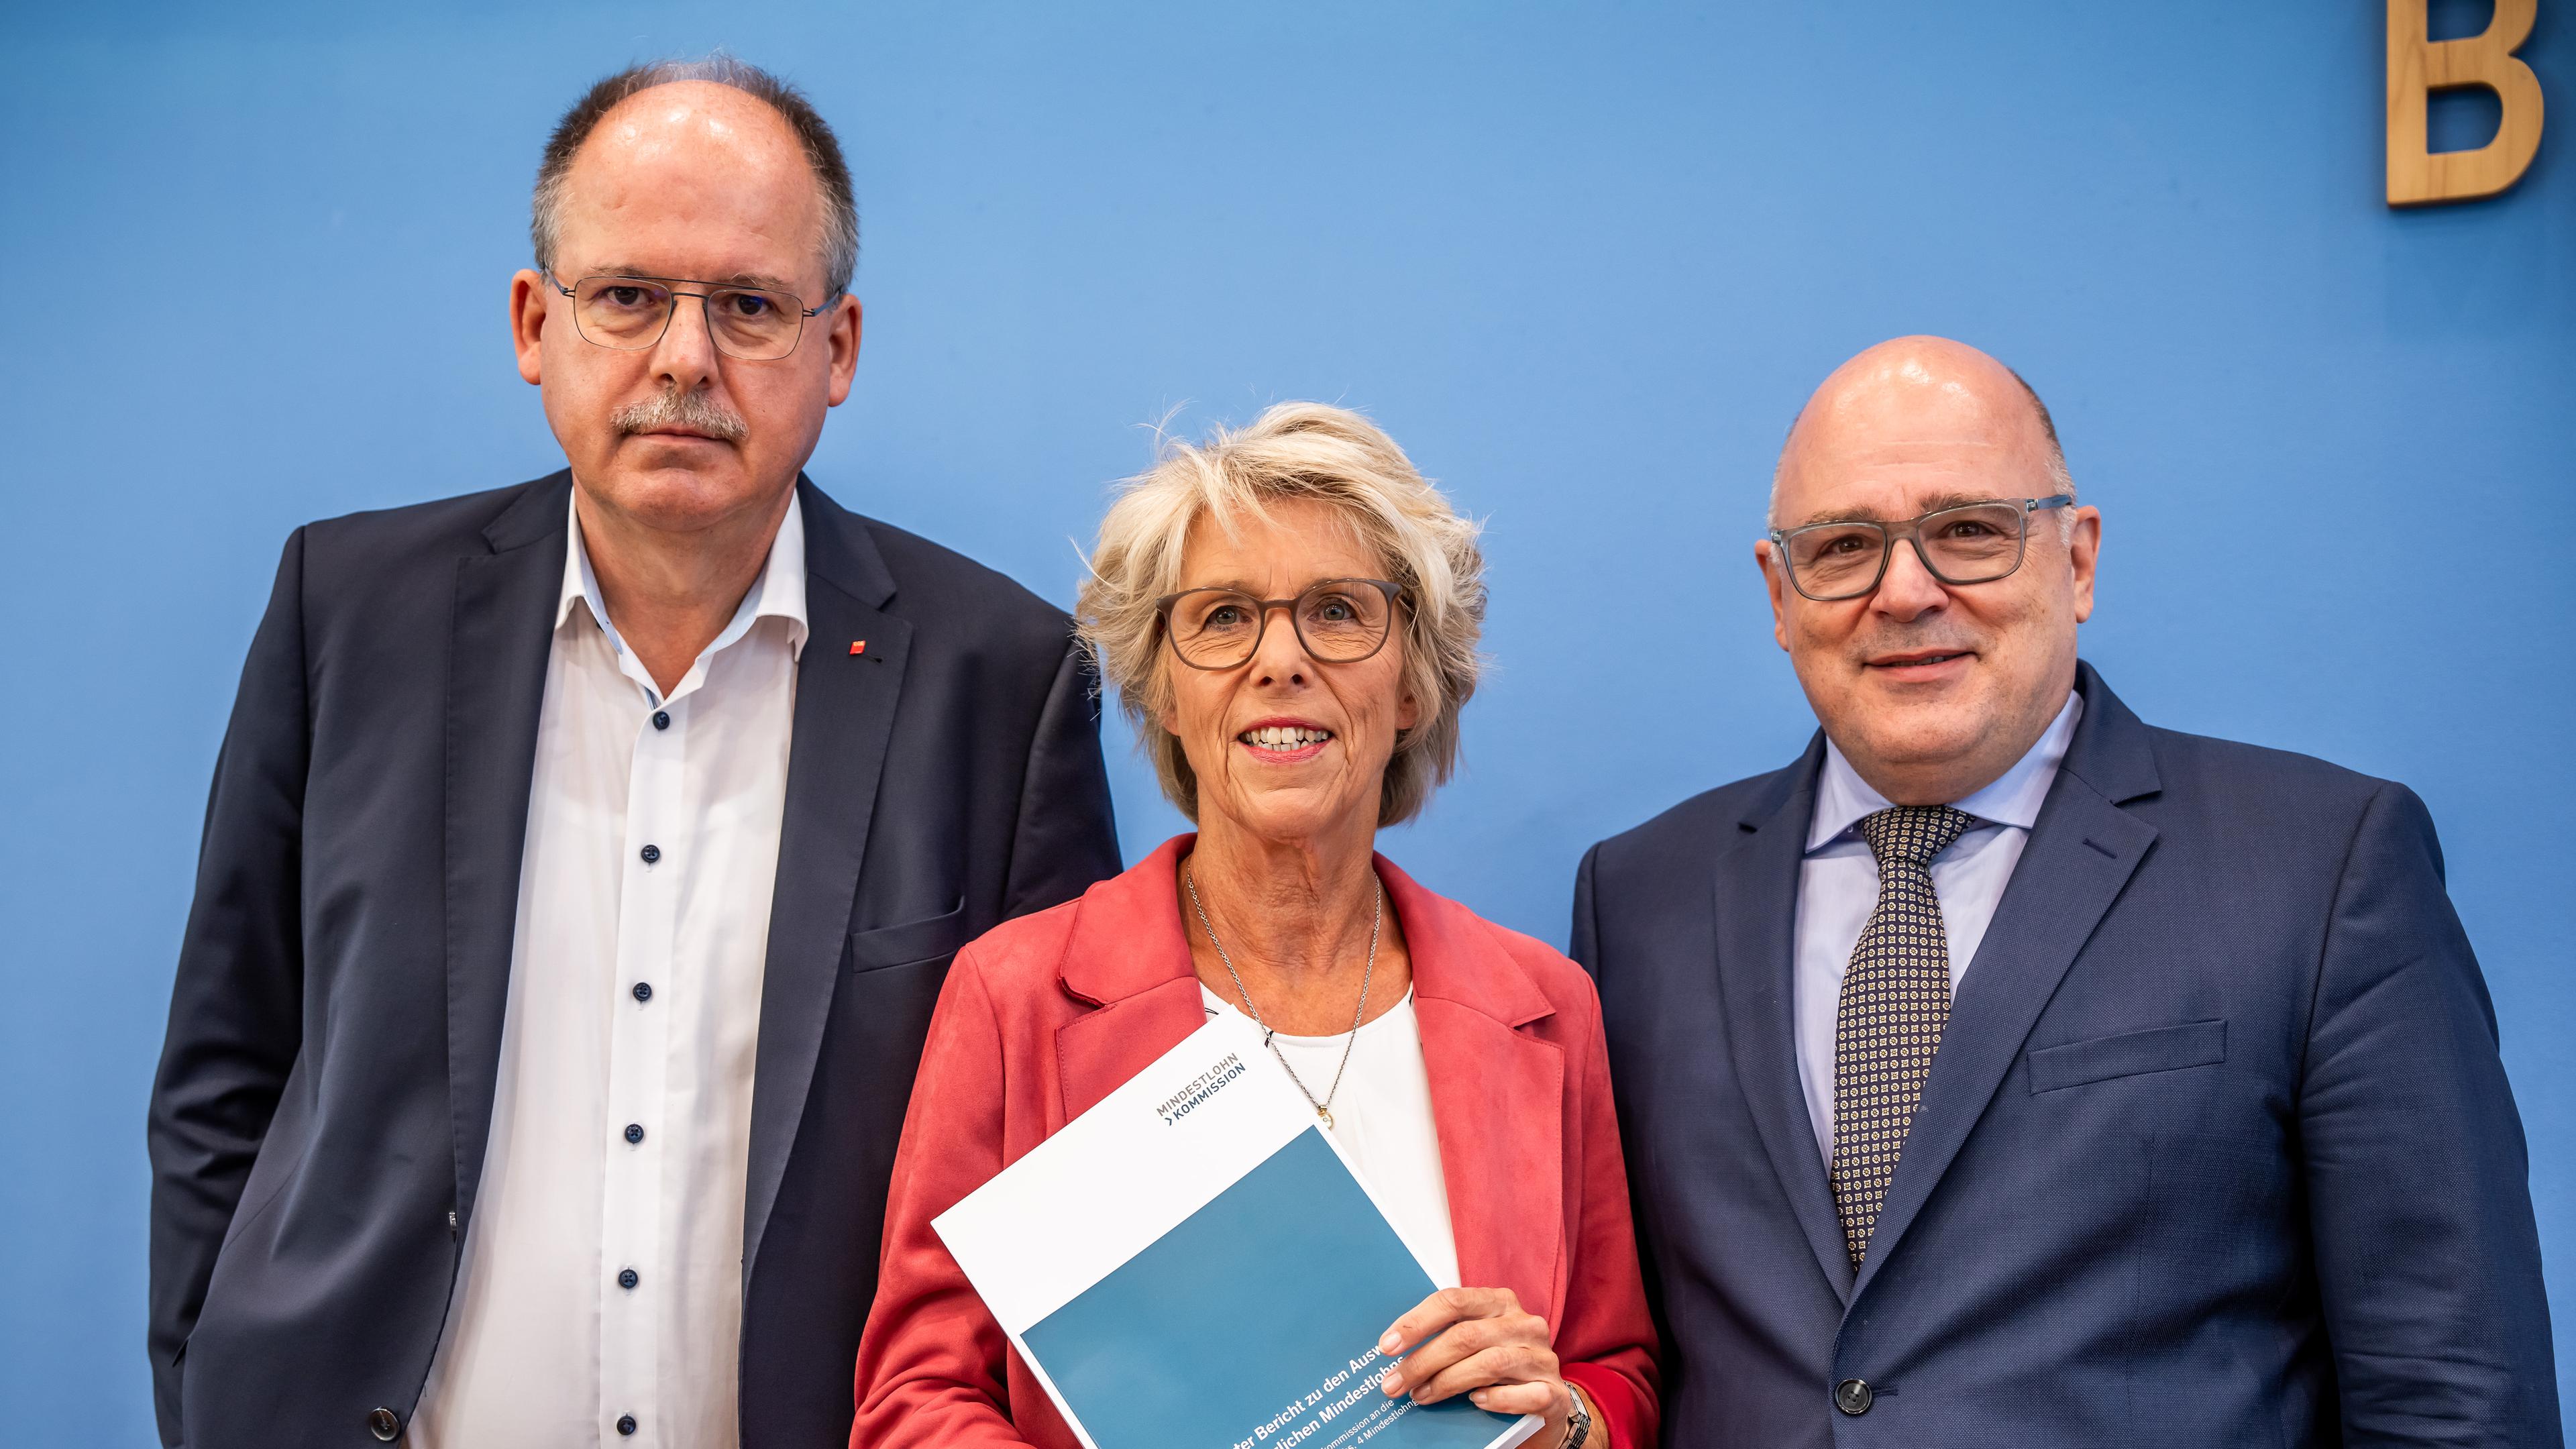 Christiane Schönefeld, Vorsitzende der Mindestlohnkommission, steht zwischen Steffen Kampeter und Stefan Körzell bei der Vorstellung des Vorschlag für Mindestlohn. 